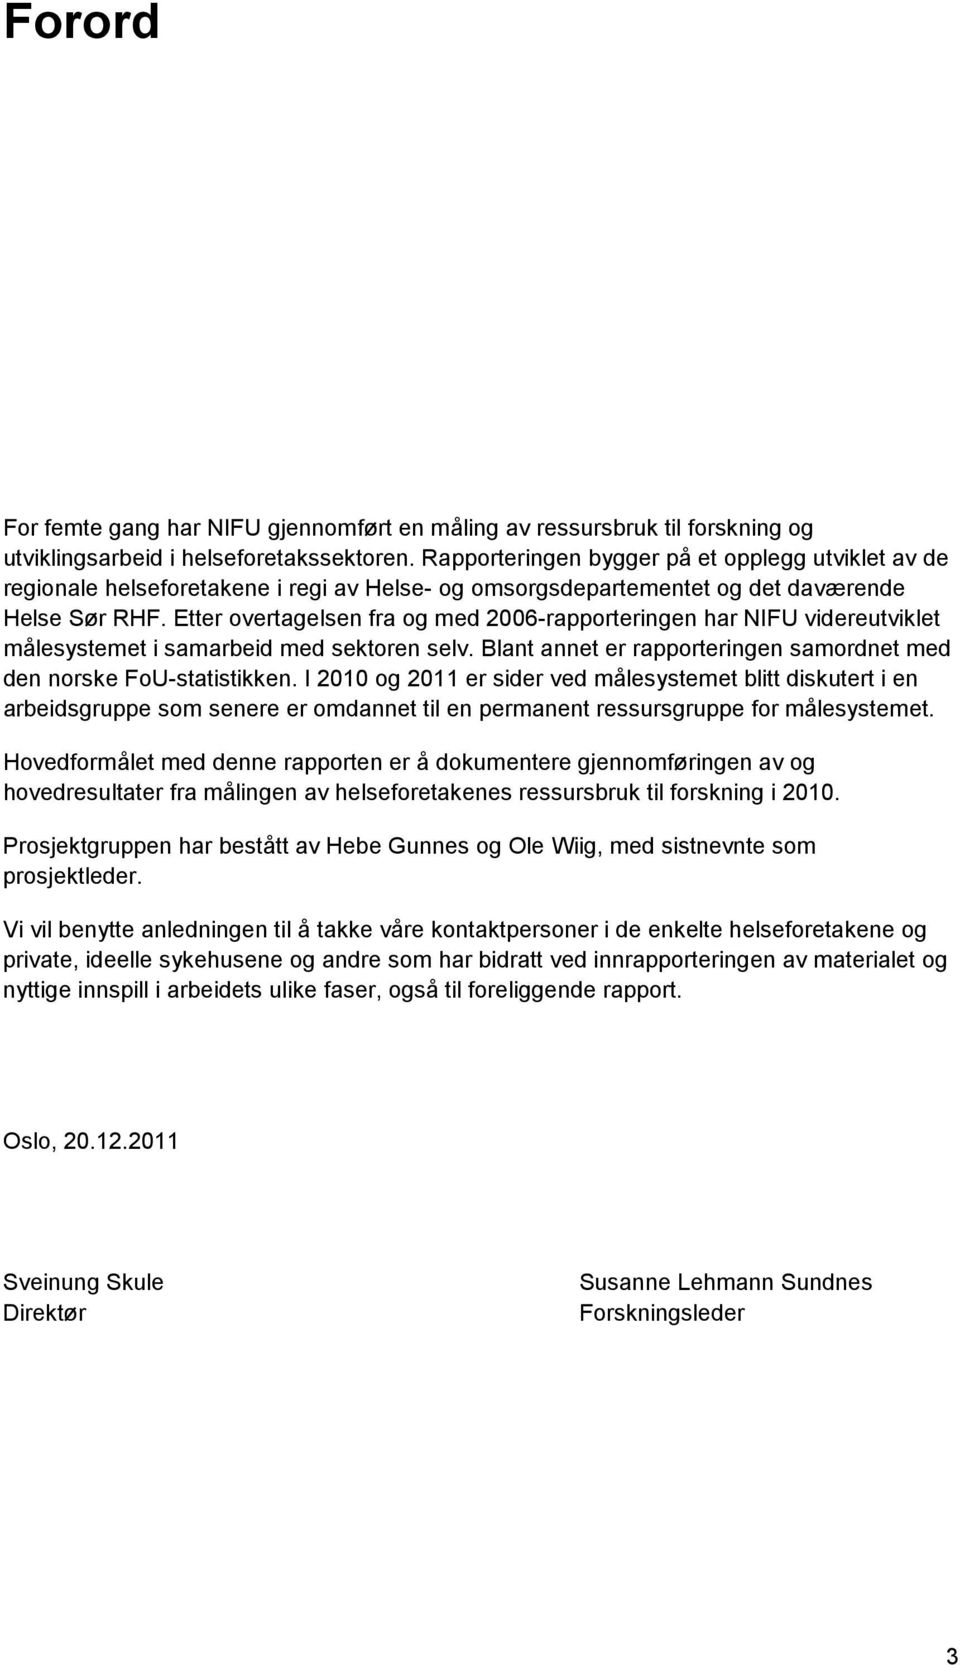 Etter overtagelsen fra og med 2006-rapporteringen har NIFU videreutviklet målesystemet i samarbeid med sektoren selv. Blant annet er rapporteringen samordnet med den norske FoU-statistikken.